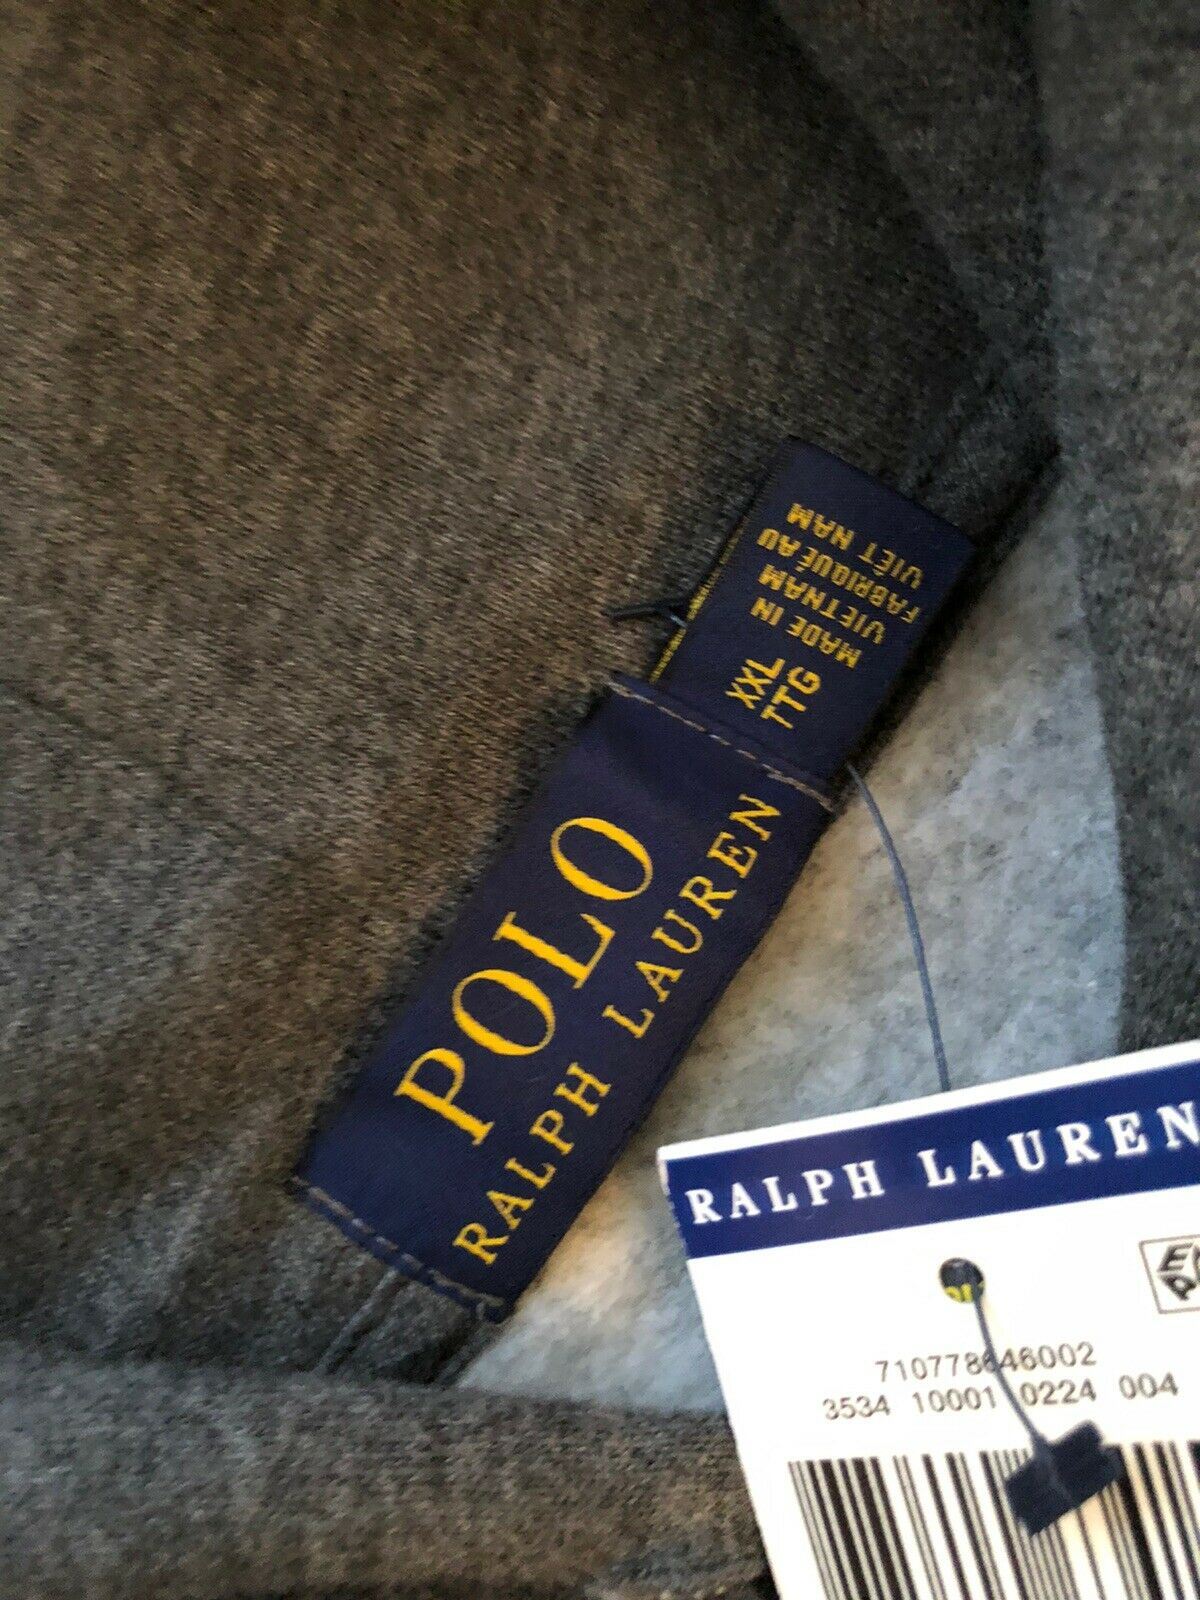 NWT $99,99 Polo Ralph Lauren Bear Серый свитер с капюшоном 2XL